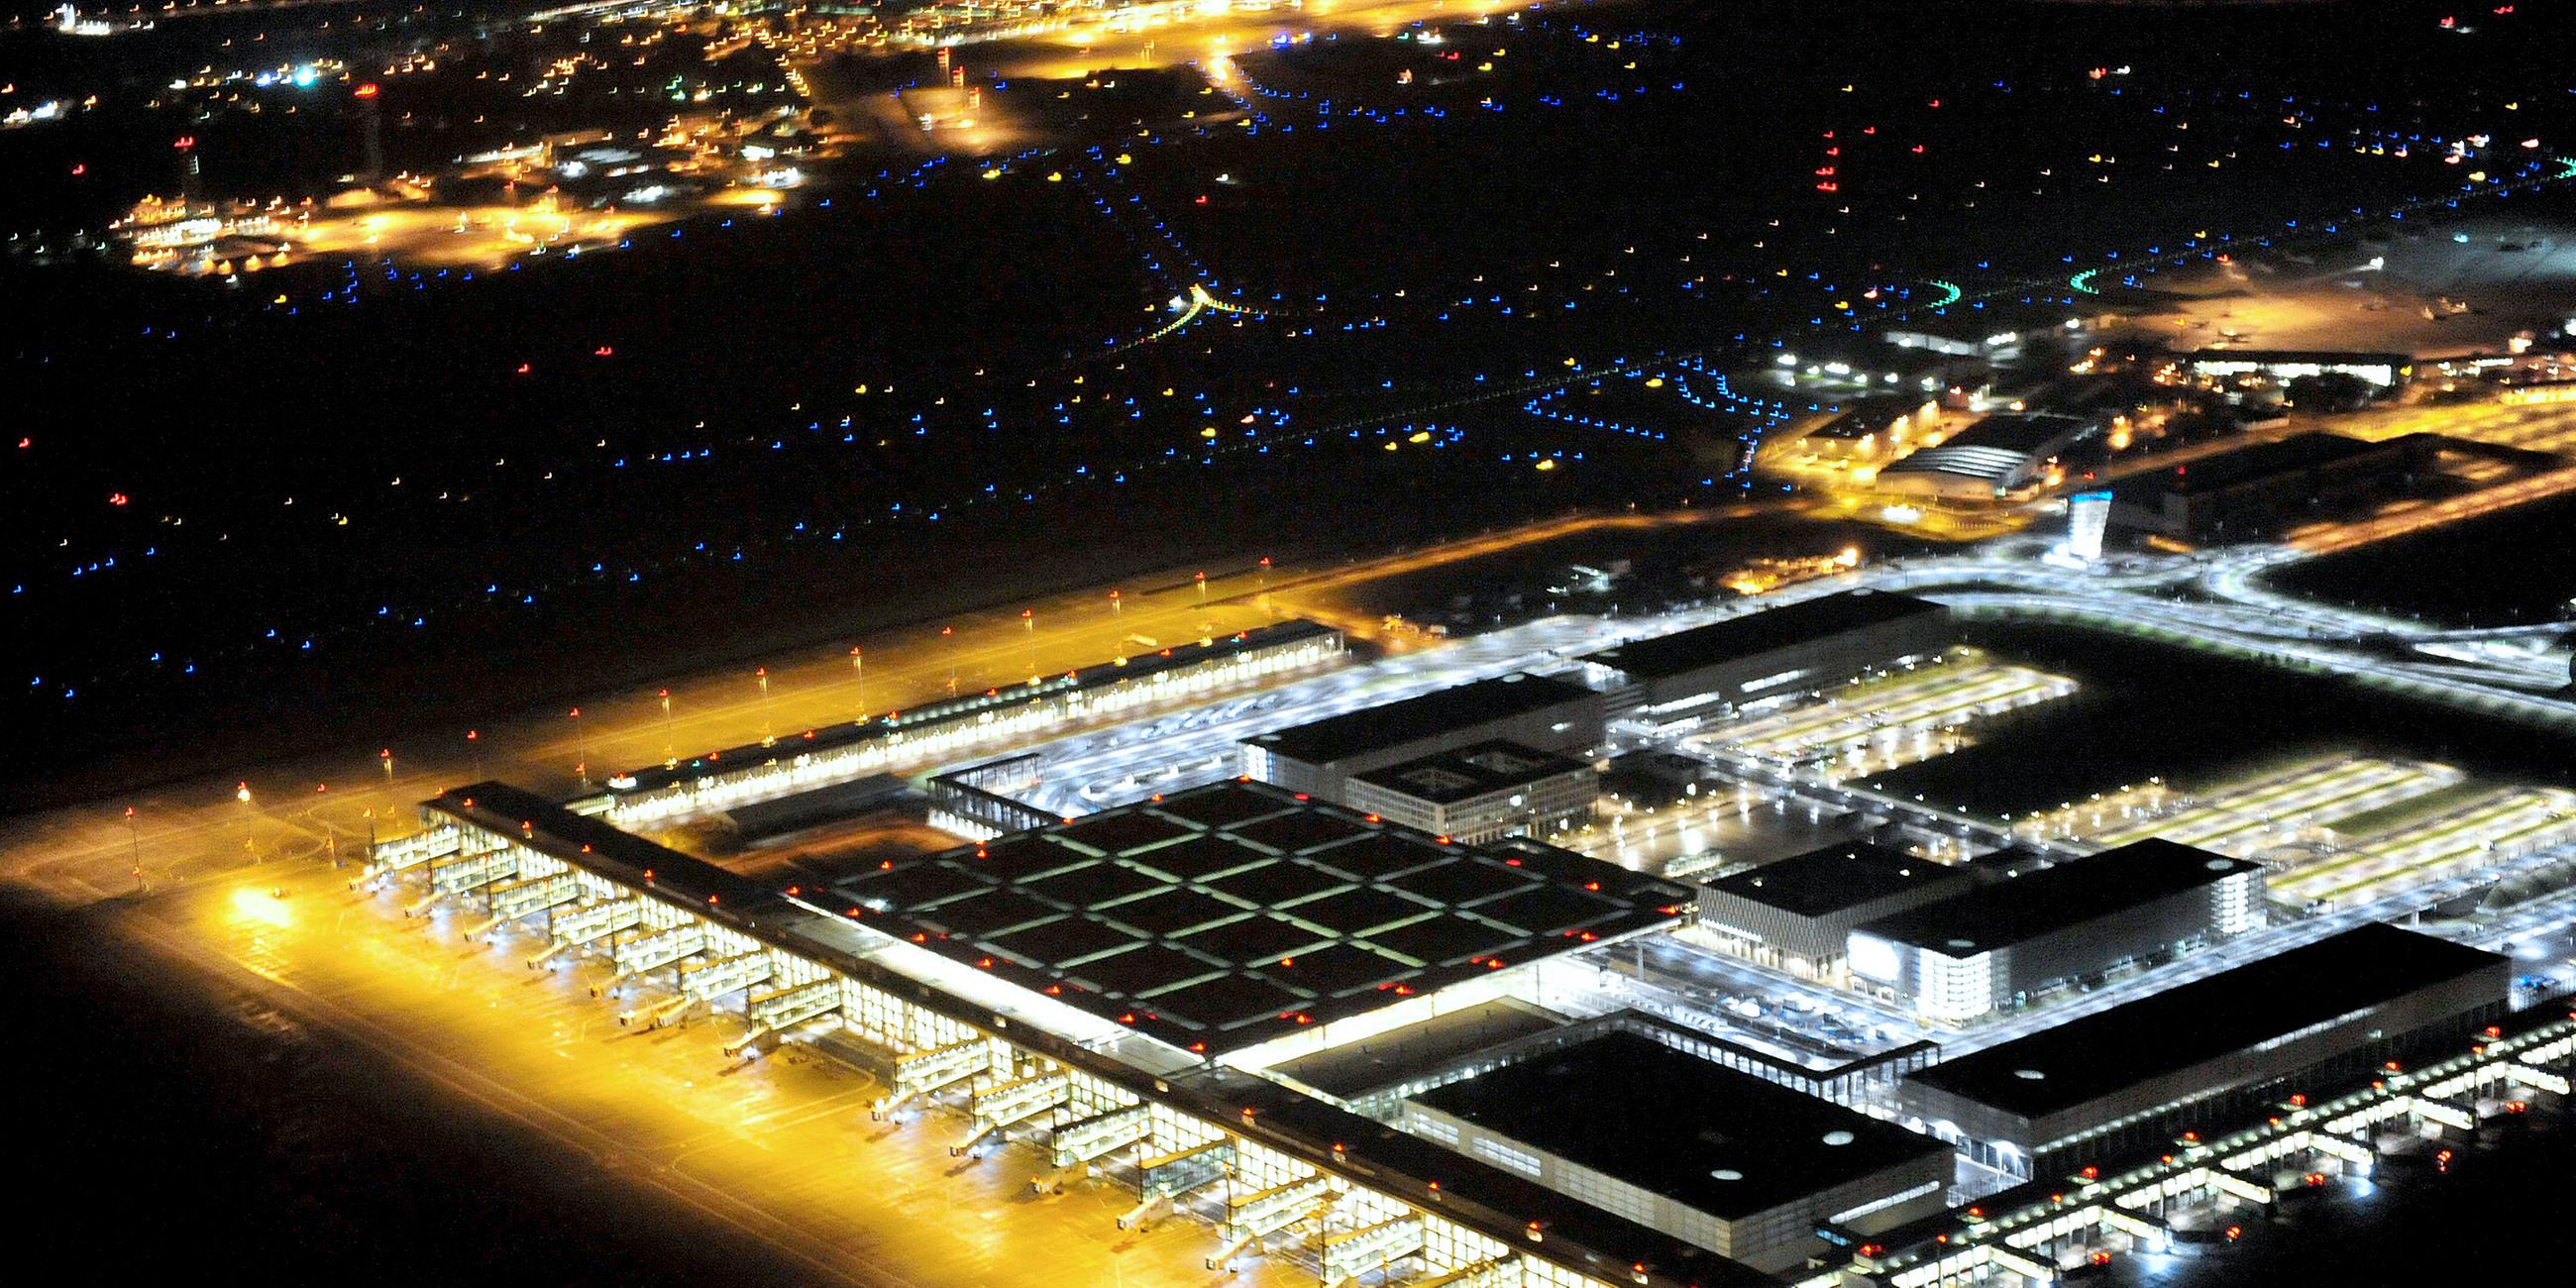 Archiv: Blick bei Nacht auf das beleuchtete Terminal und die Rollflächen des Flughafens Berlin Brandenburg am 10.10.2012